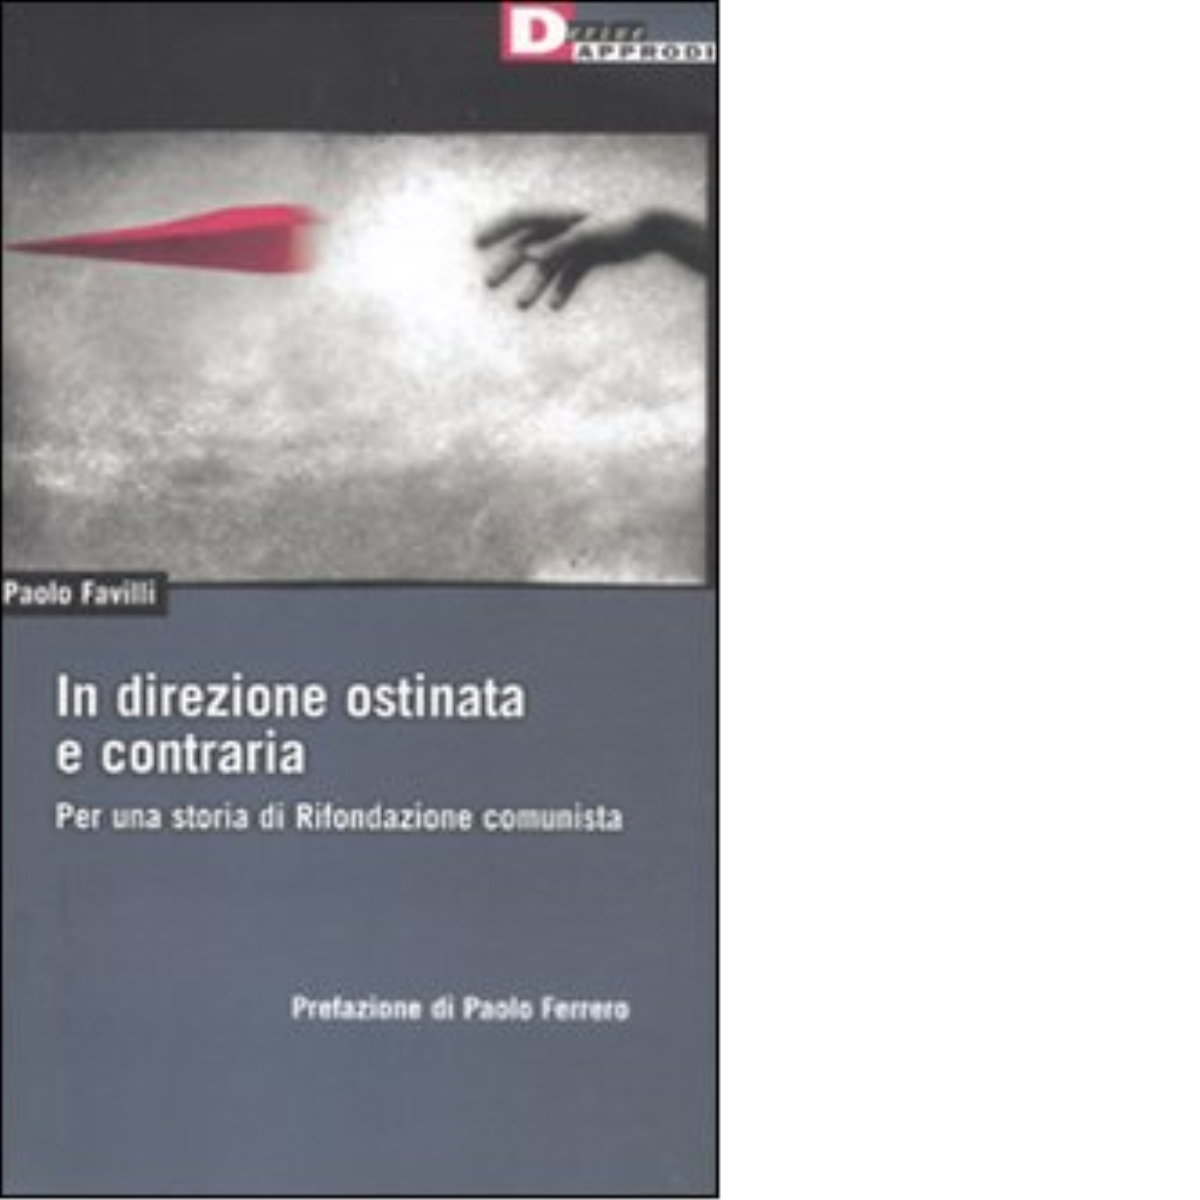 IN DIREZIONE OSTINATA E CONTRARIA. di PAOLO FAVILLI - DeriveApprodi editore,2011